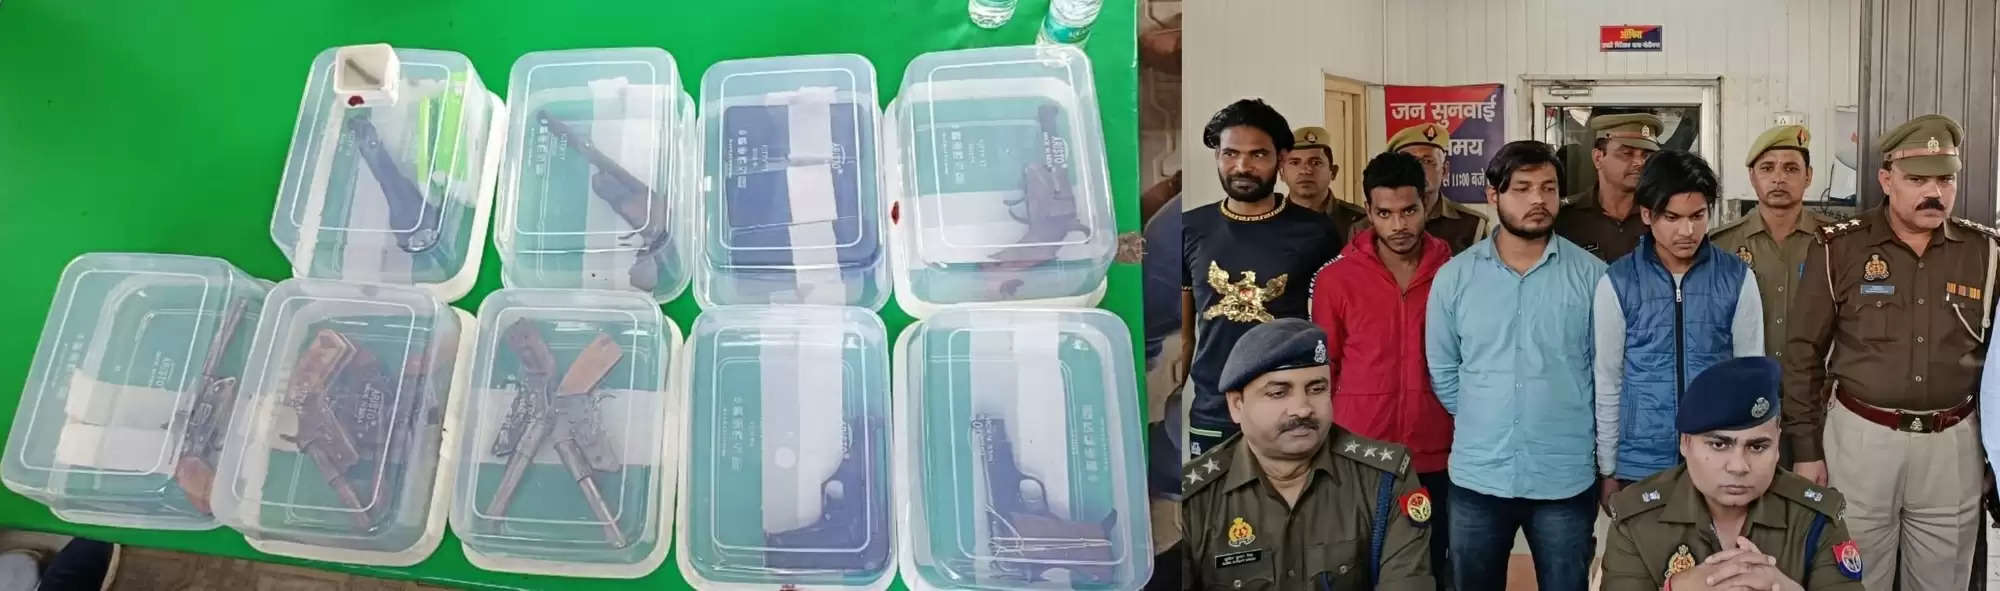 अवैध हथियार की फैक्ट्री पकड़ी, 4 गिरफ्तार, भारी संख्या में हथियार बरामद